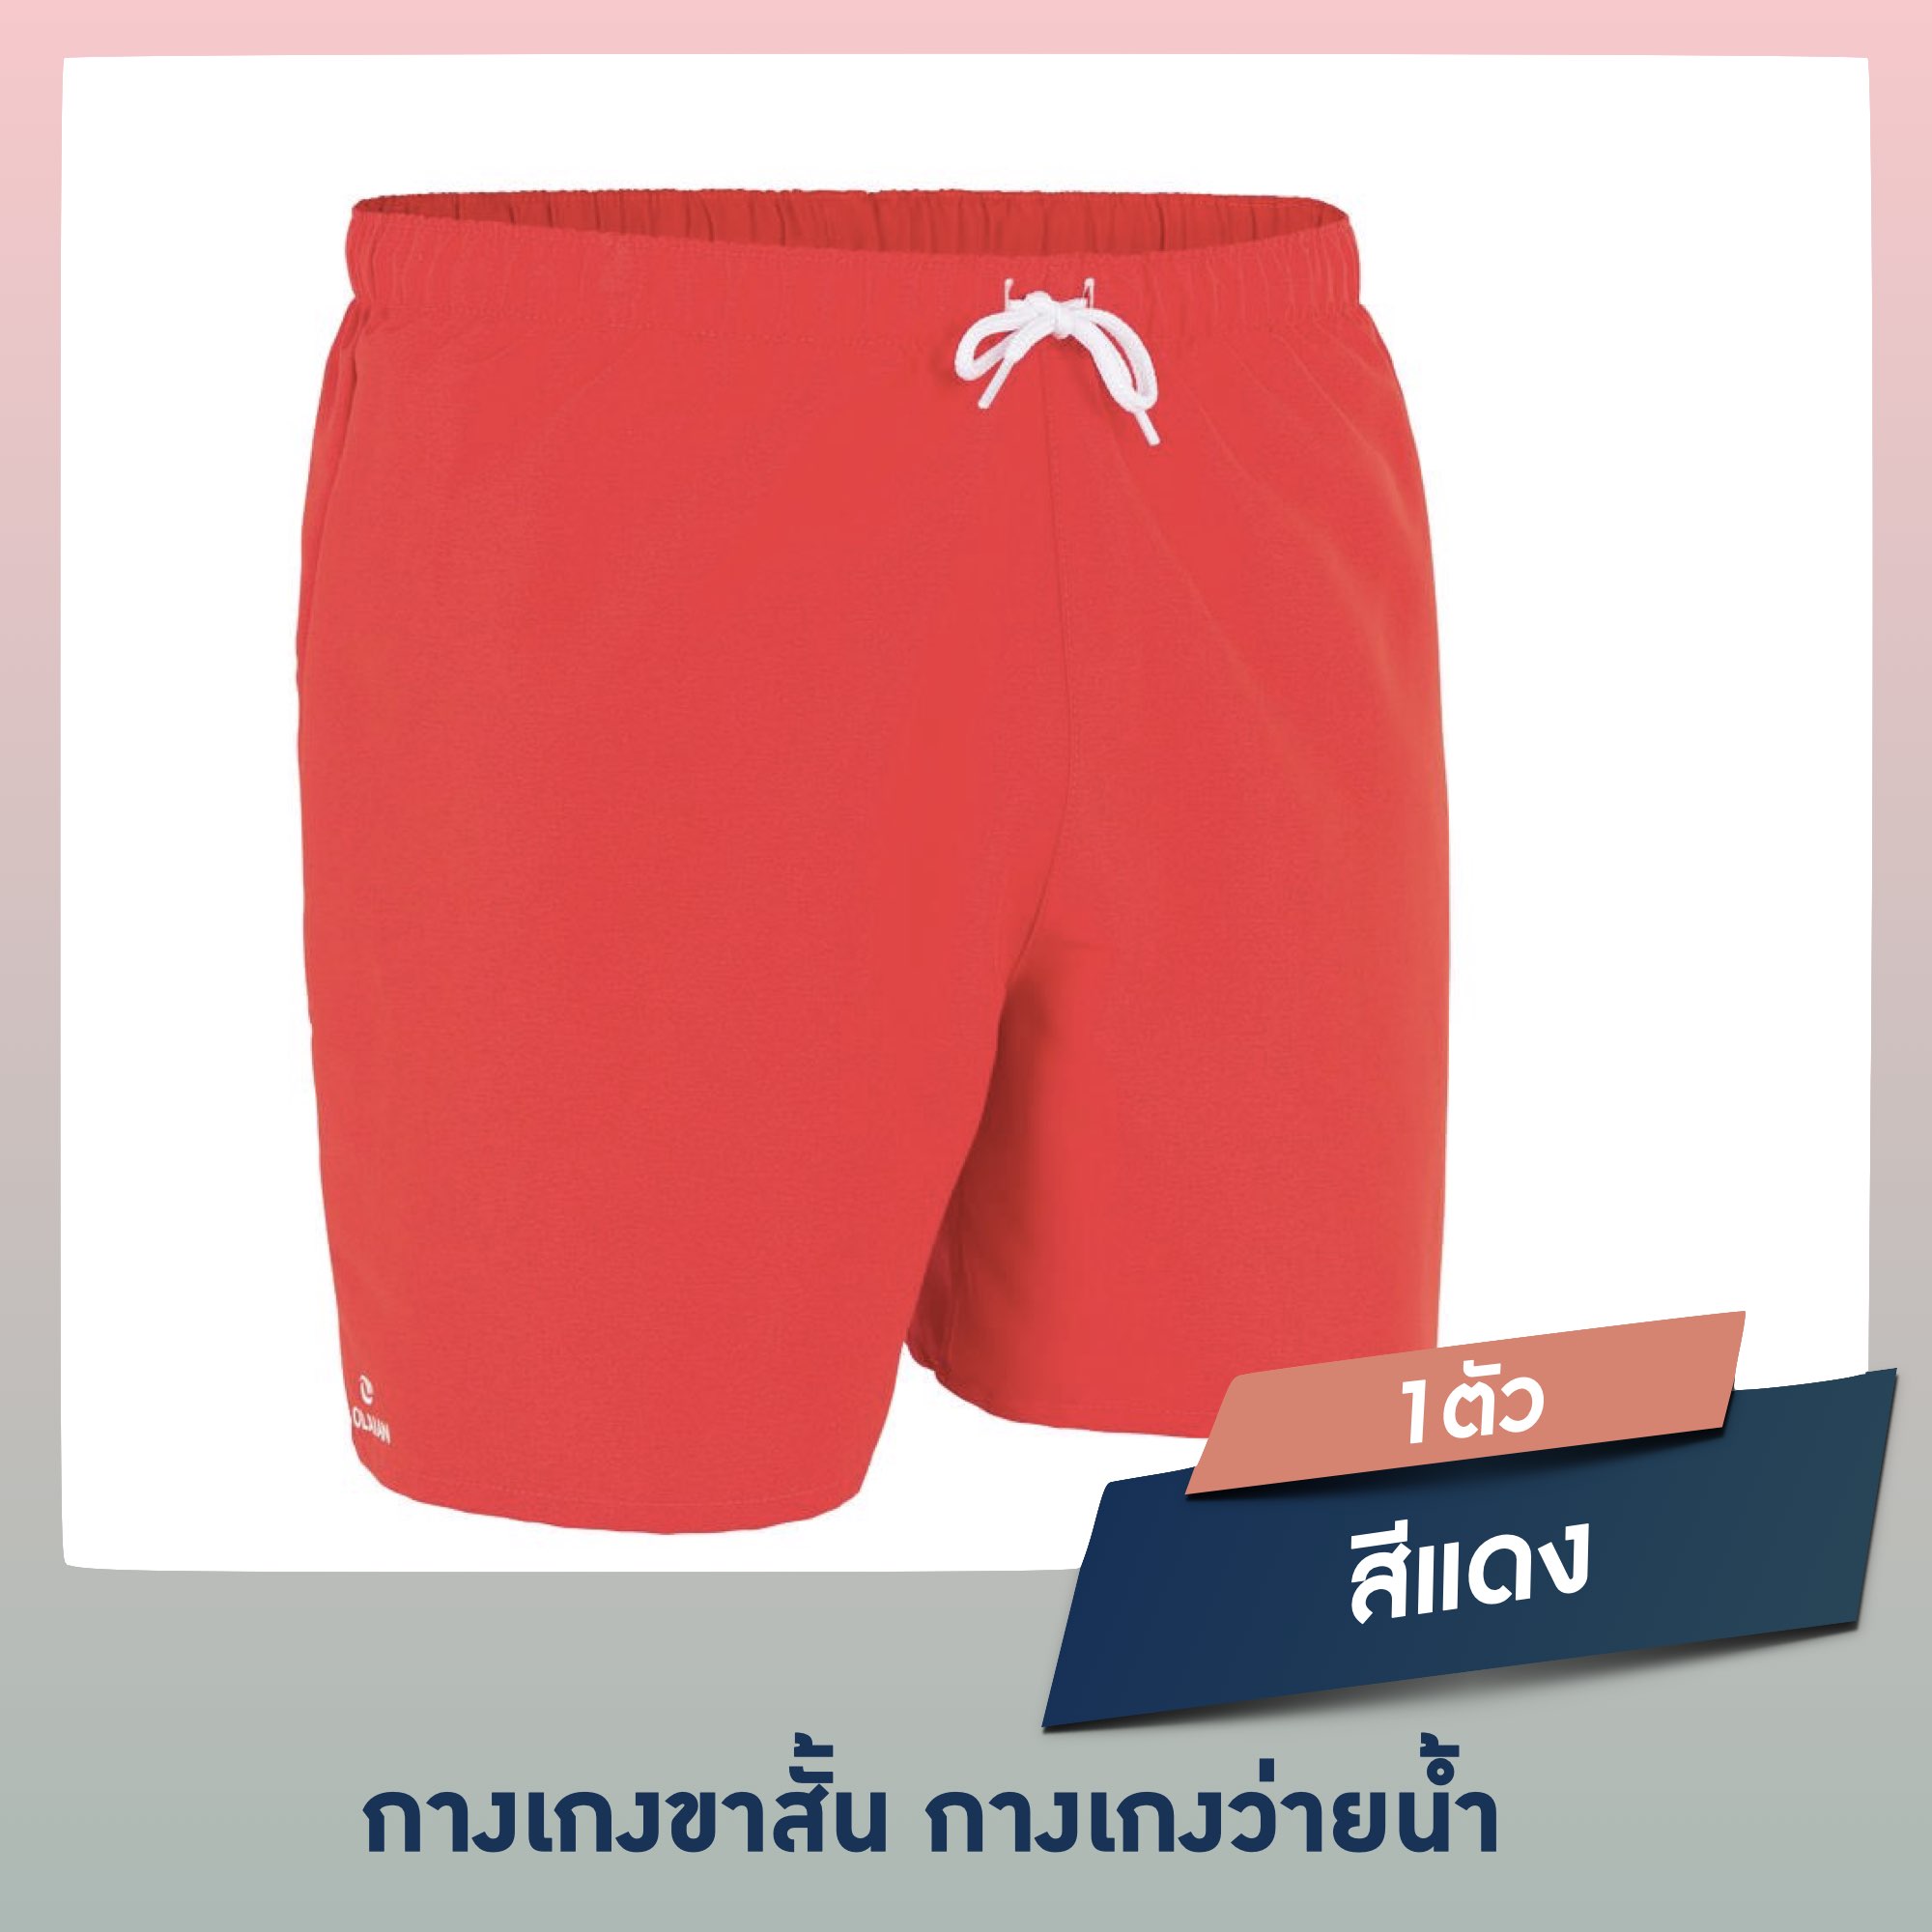 กางเกงชายหาดขาสั้น กางเกงว่ายน้ำ กางเกงกีฬา ชุดว่ายน้ำ กางเกงว่ายน้ำ กางเกงชายหาด ขาสั้น 16